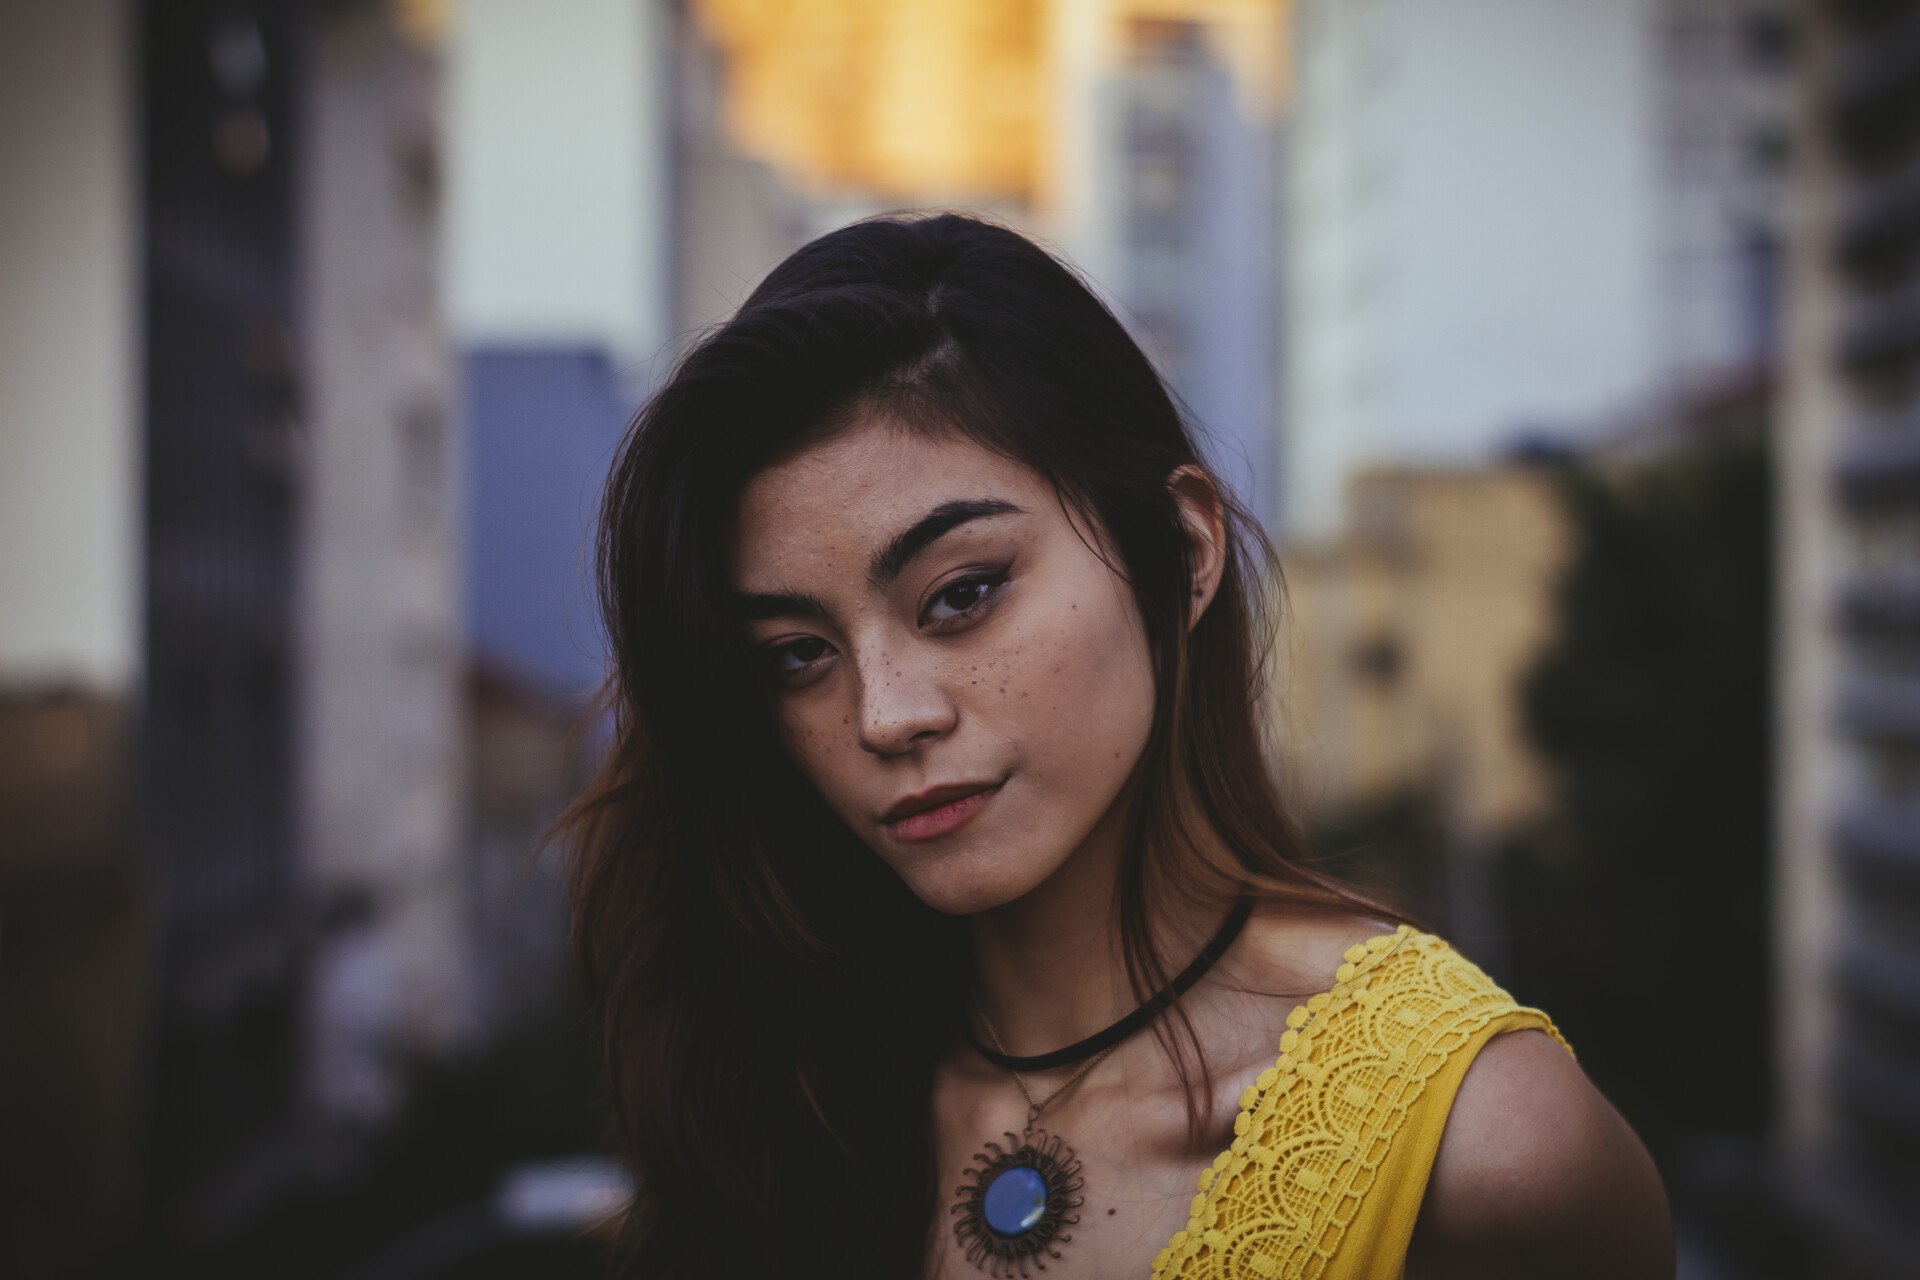 What Makes Filipino Girls So Beautiful?